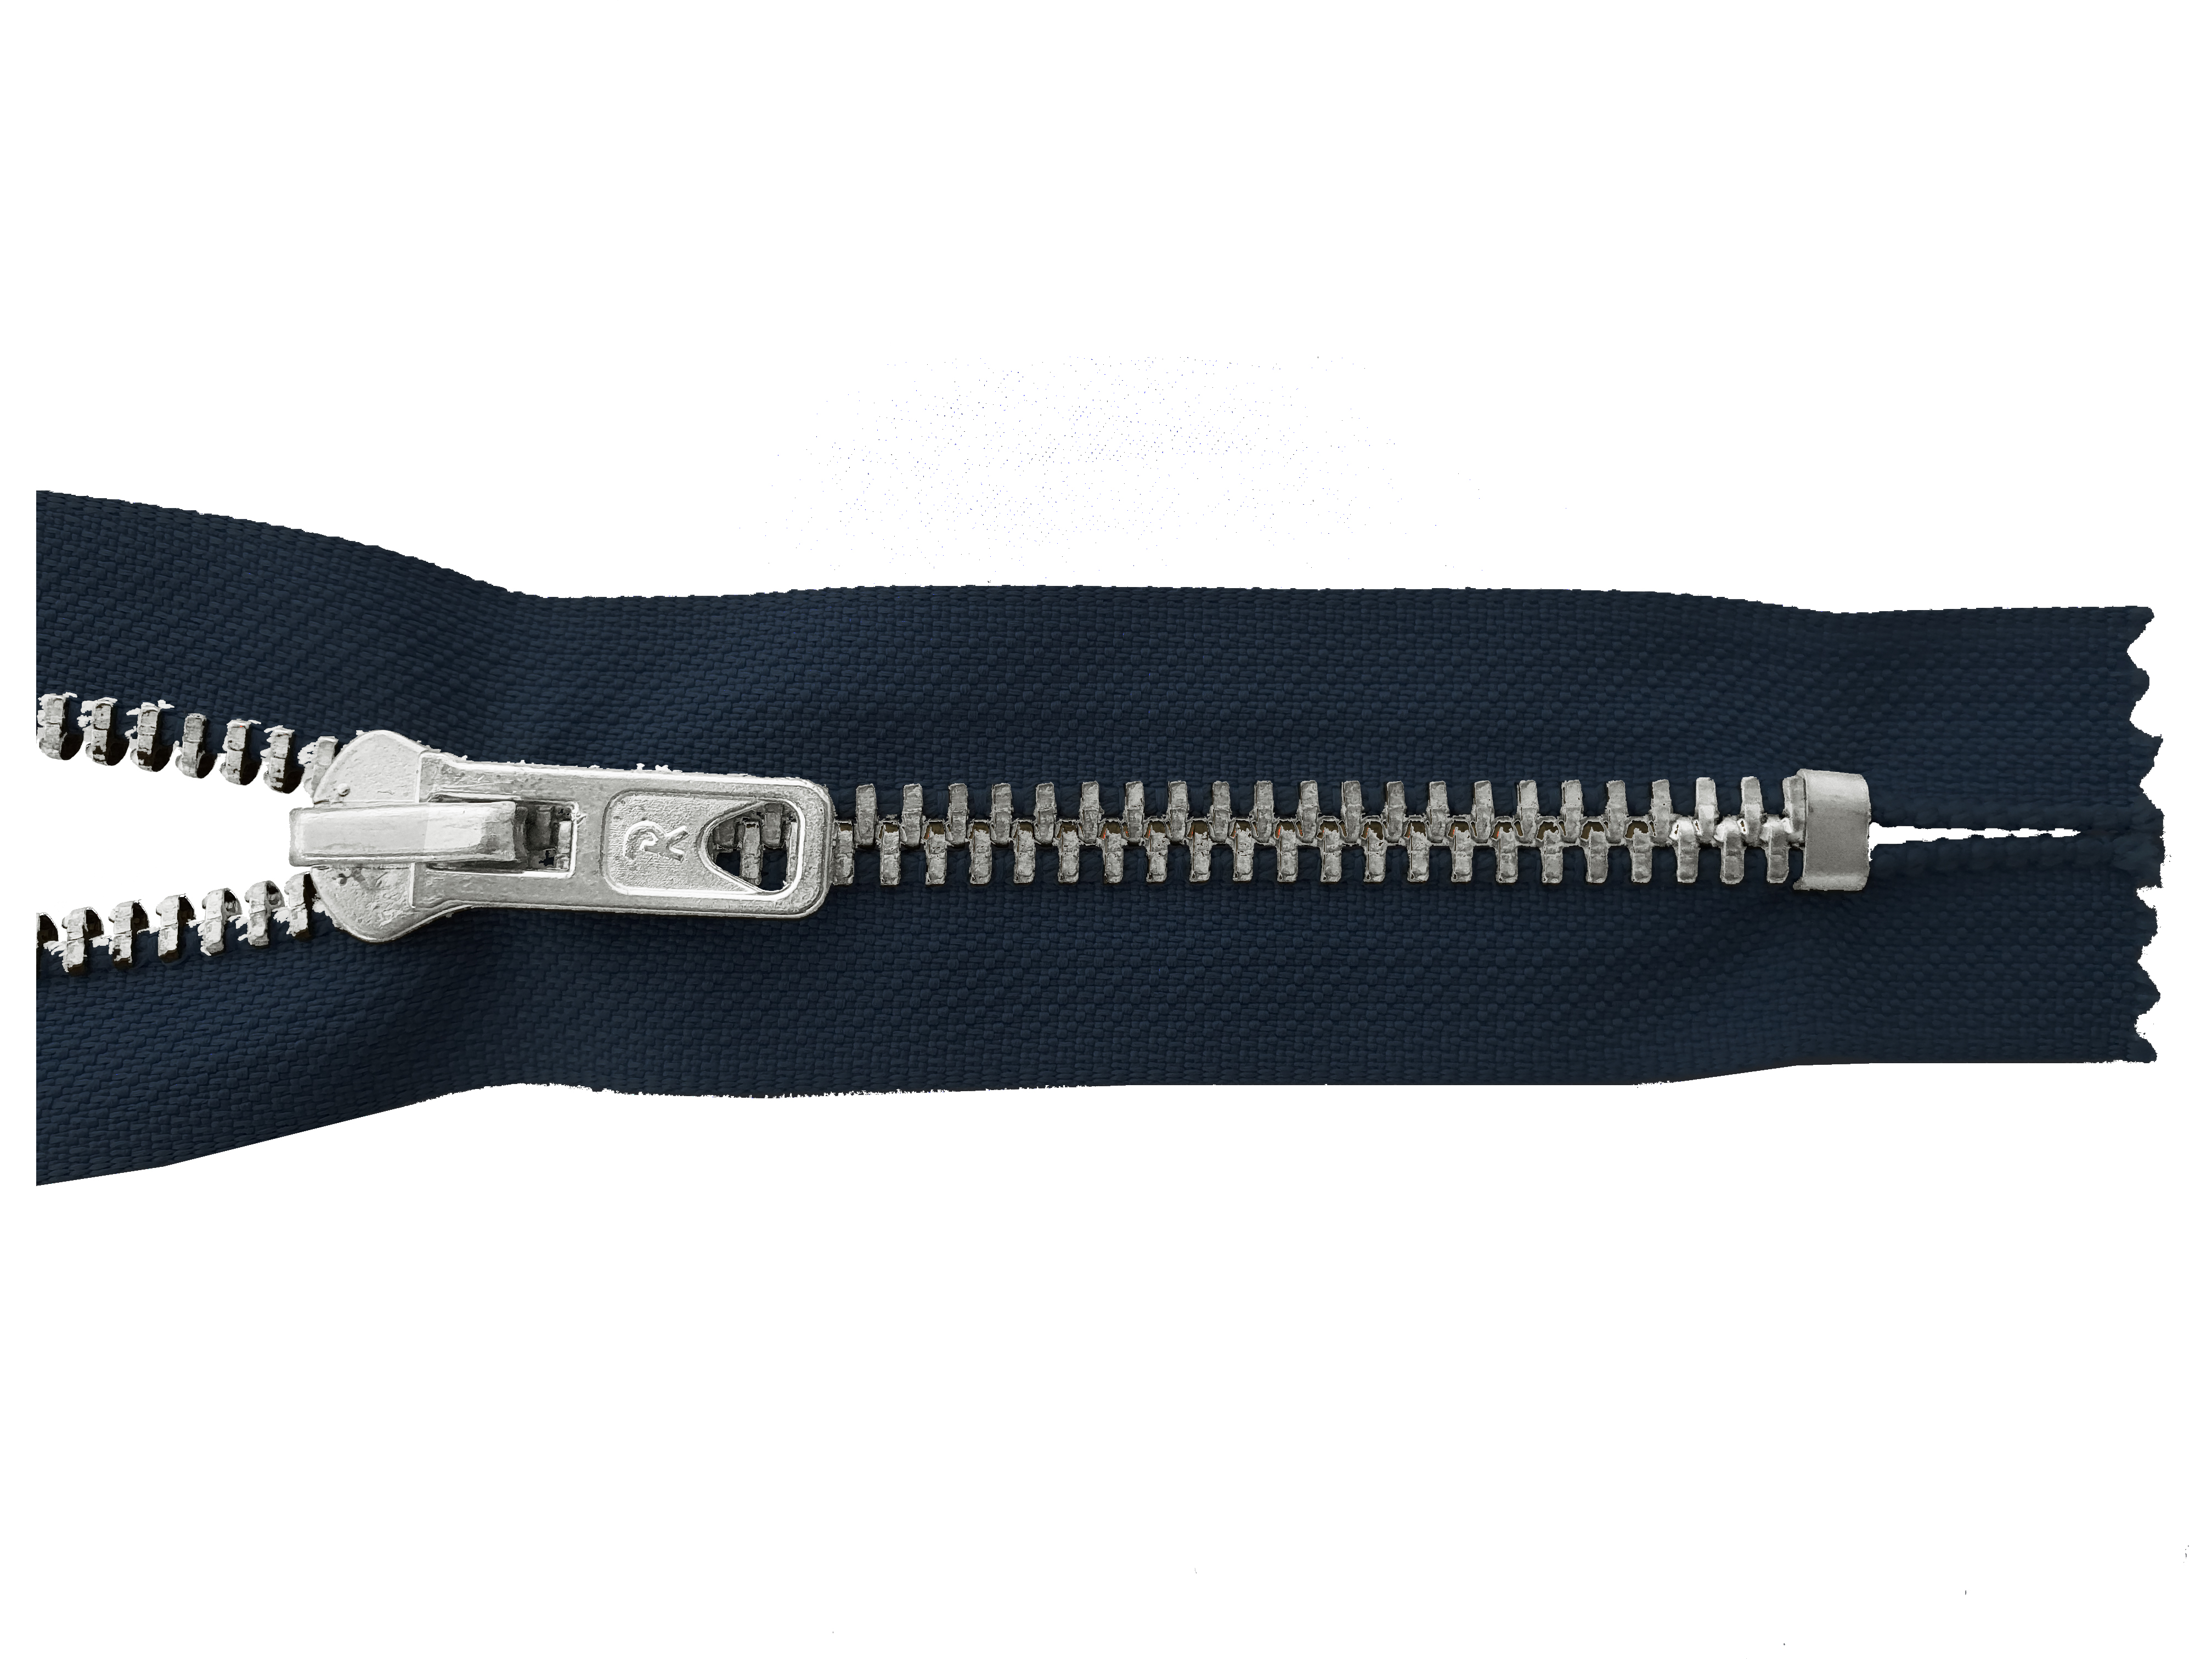 Reißverschluss breite Zähne (8mm), schwarz, 80cm nich teilbar,Metallzähne silberfb nickelfrei, hochwertiger Marken-Reißverschluss von Rubi/Barcelona